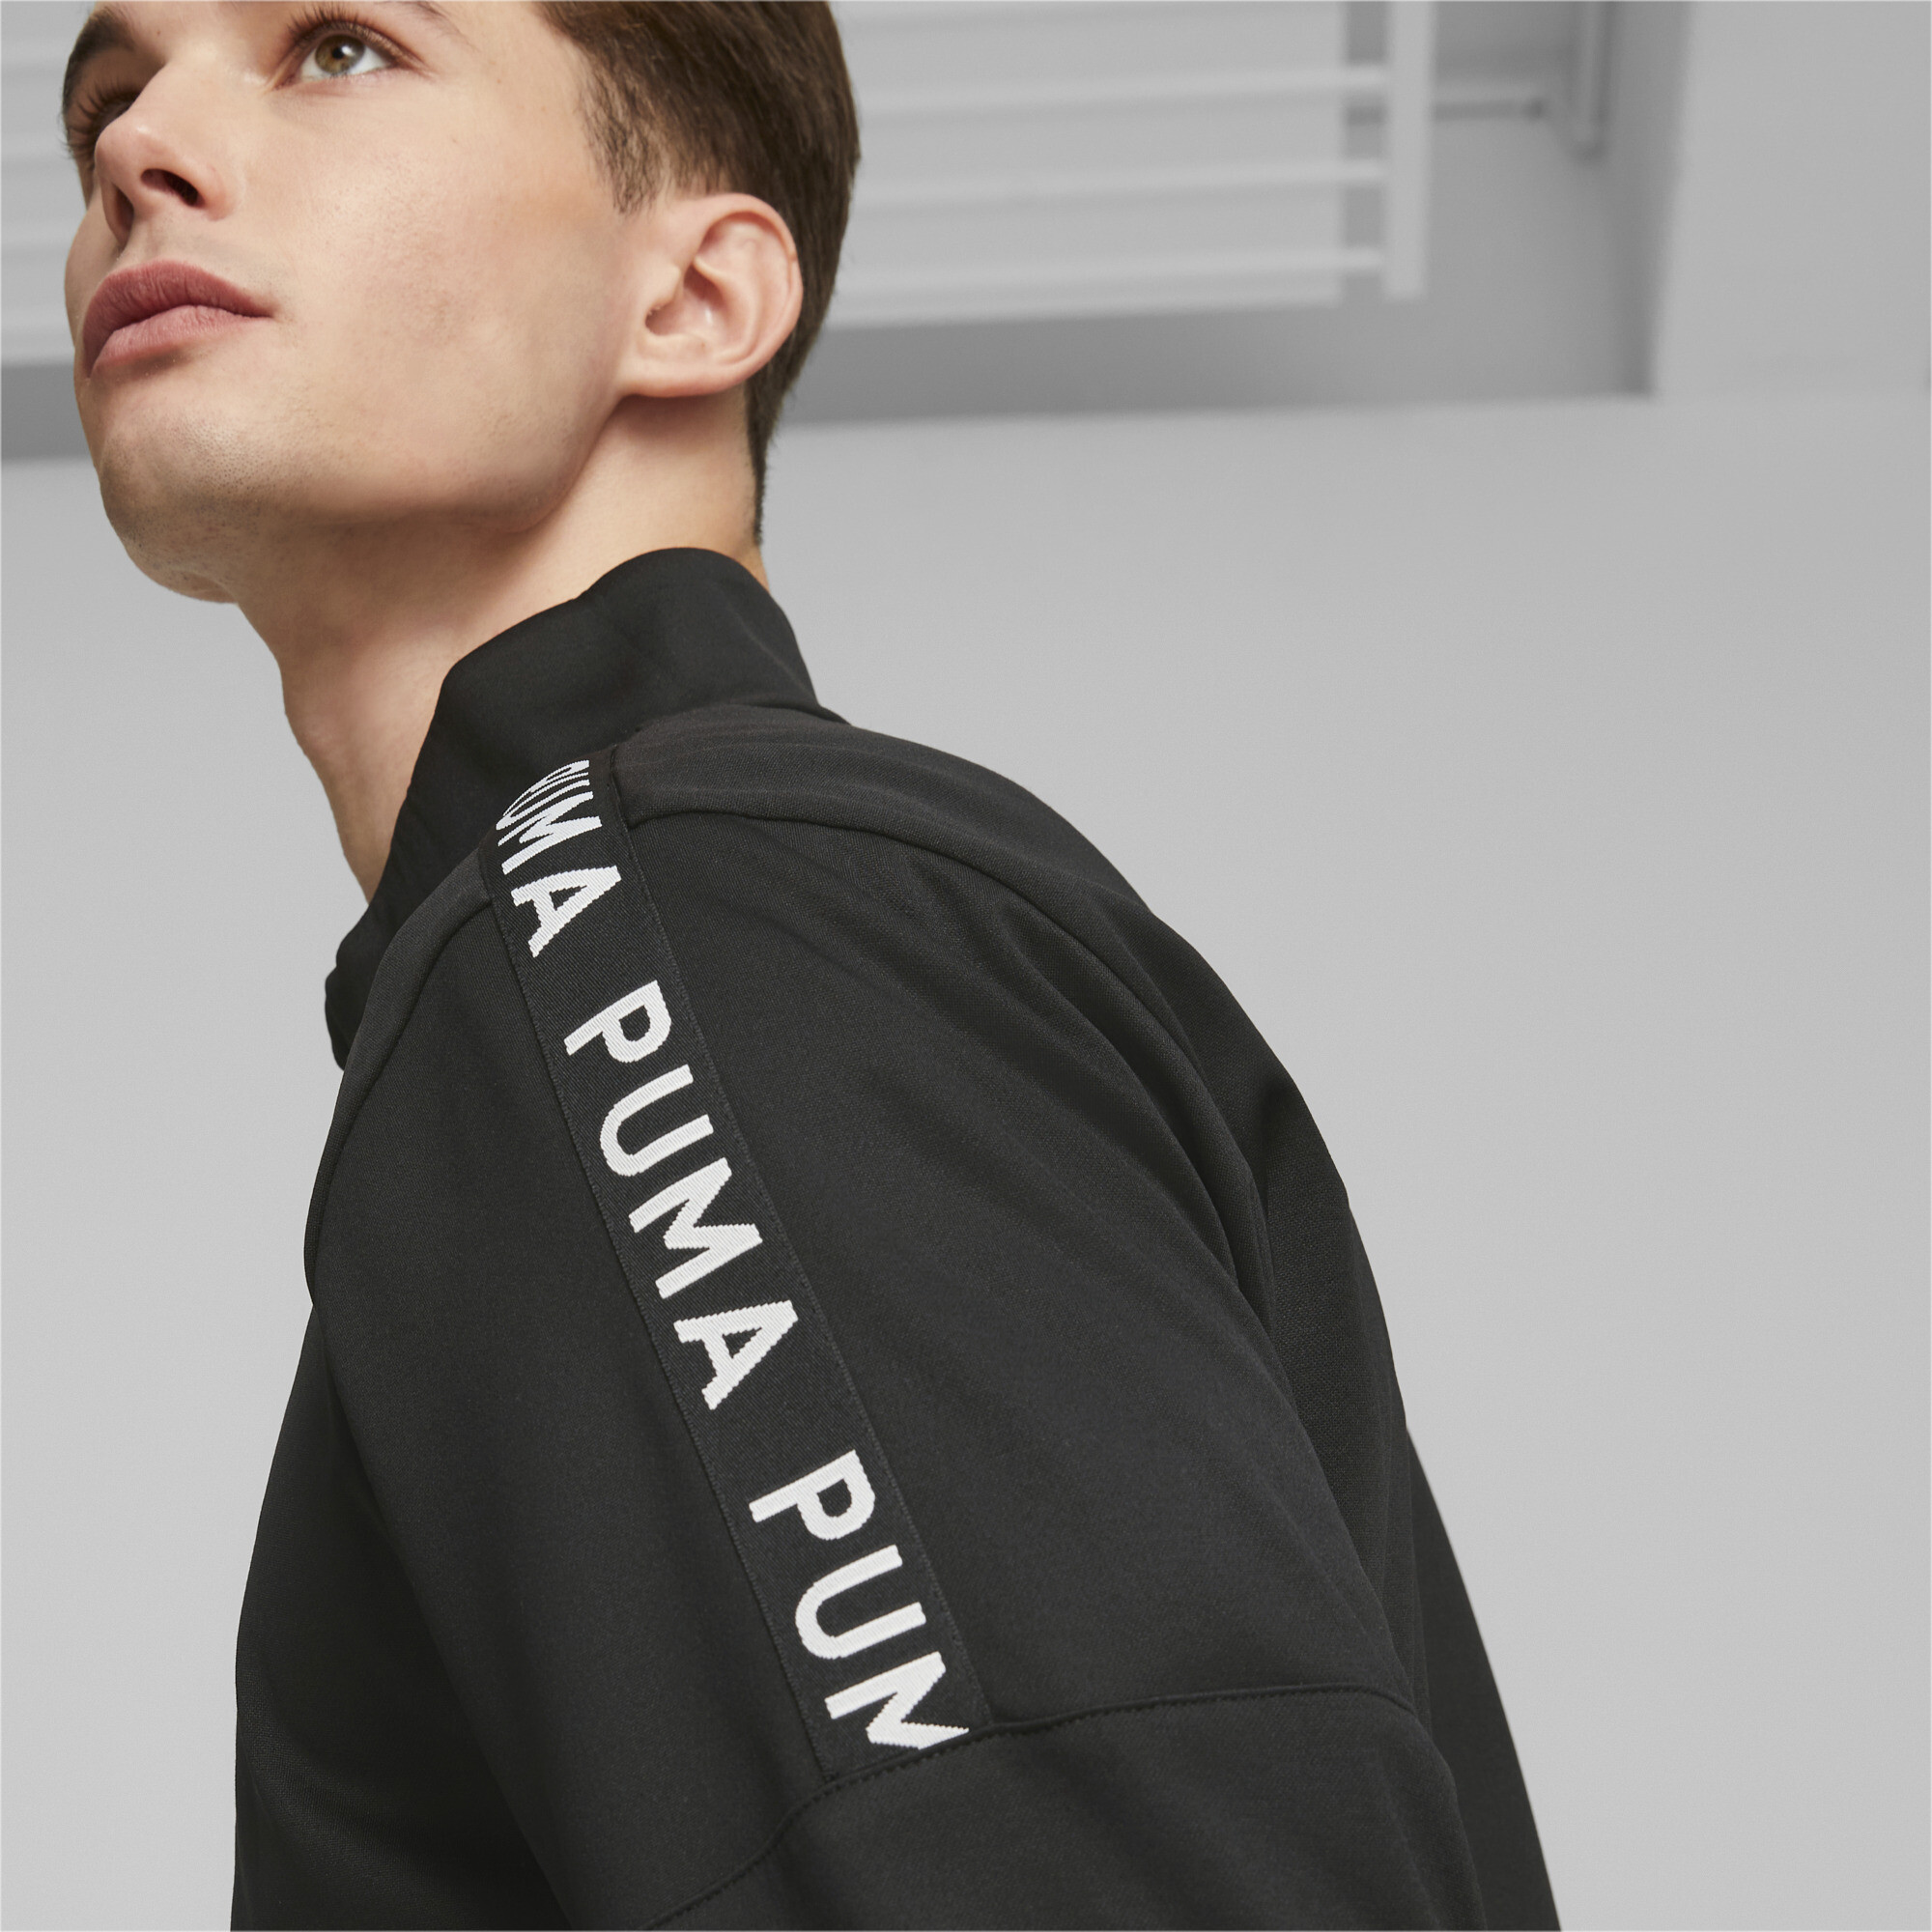 Men's PUMA Fit Light PWRFLEECE Full-Zip Training Jacket Men In Black, Size XS